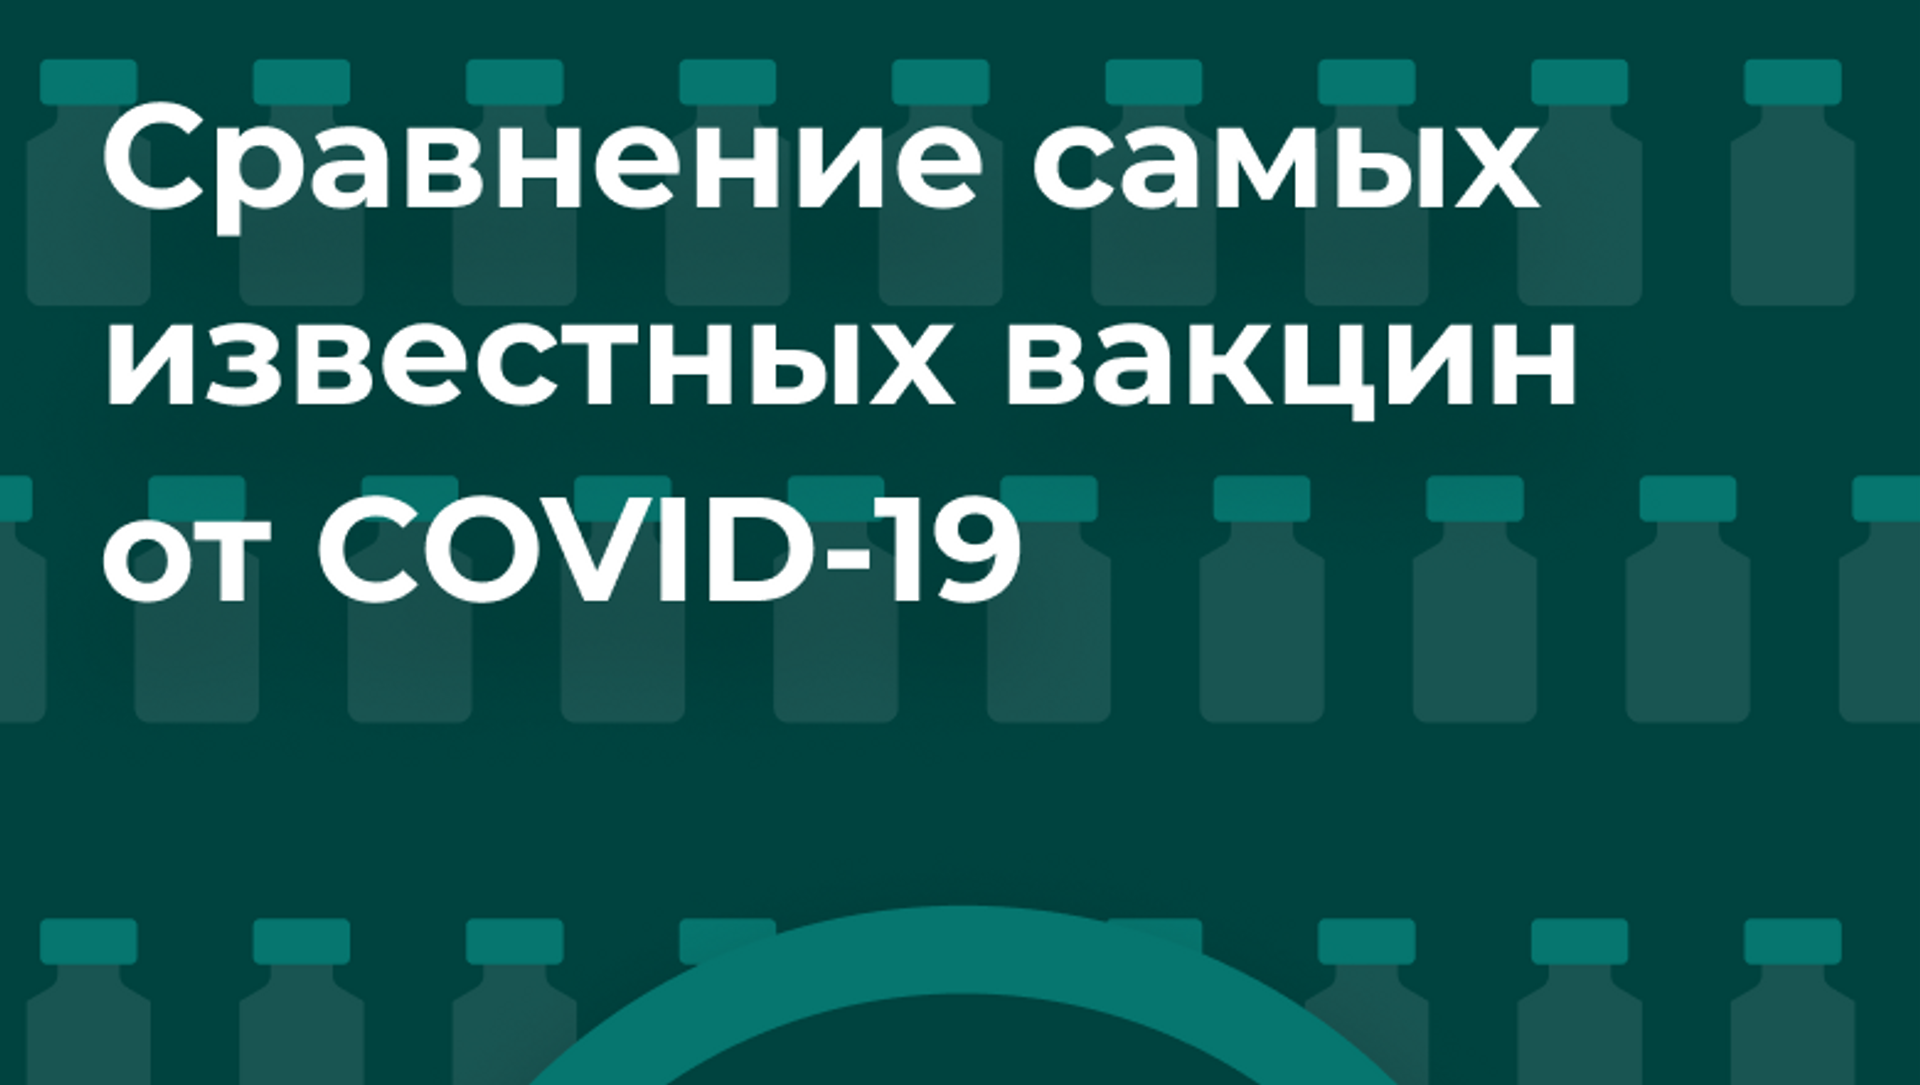 Вакцины от COVID-19:  сравнение характеристик - Sputnik Молдова, 1920, 14.03.2021